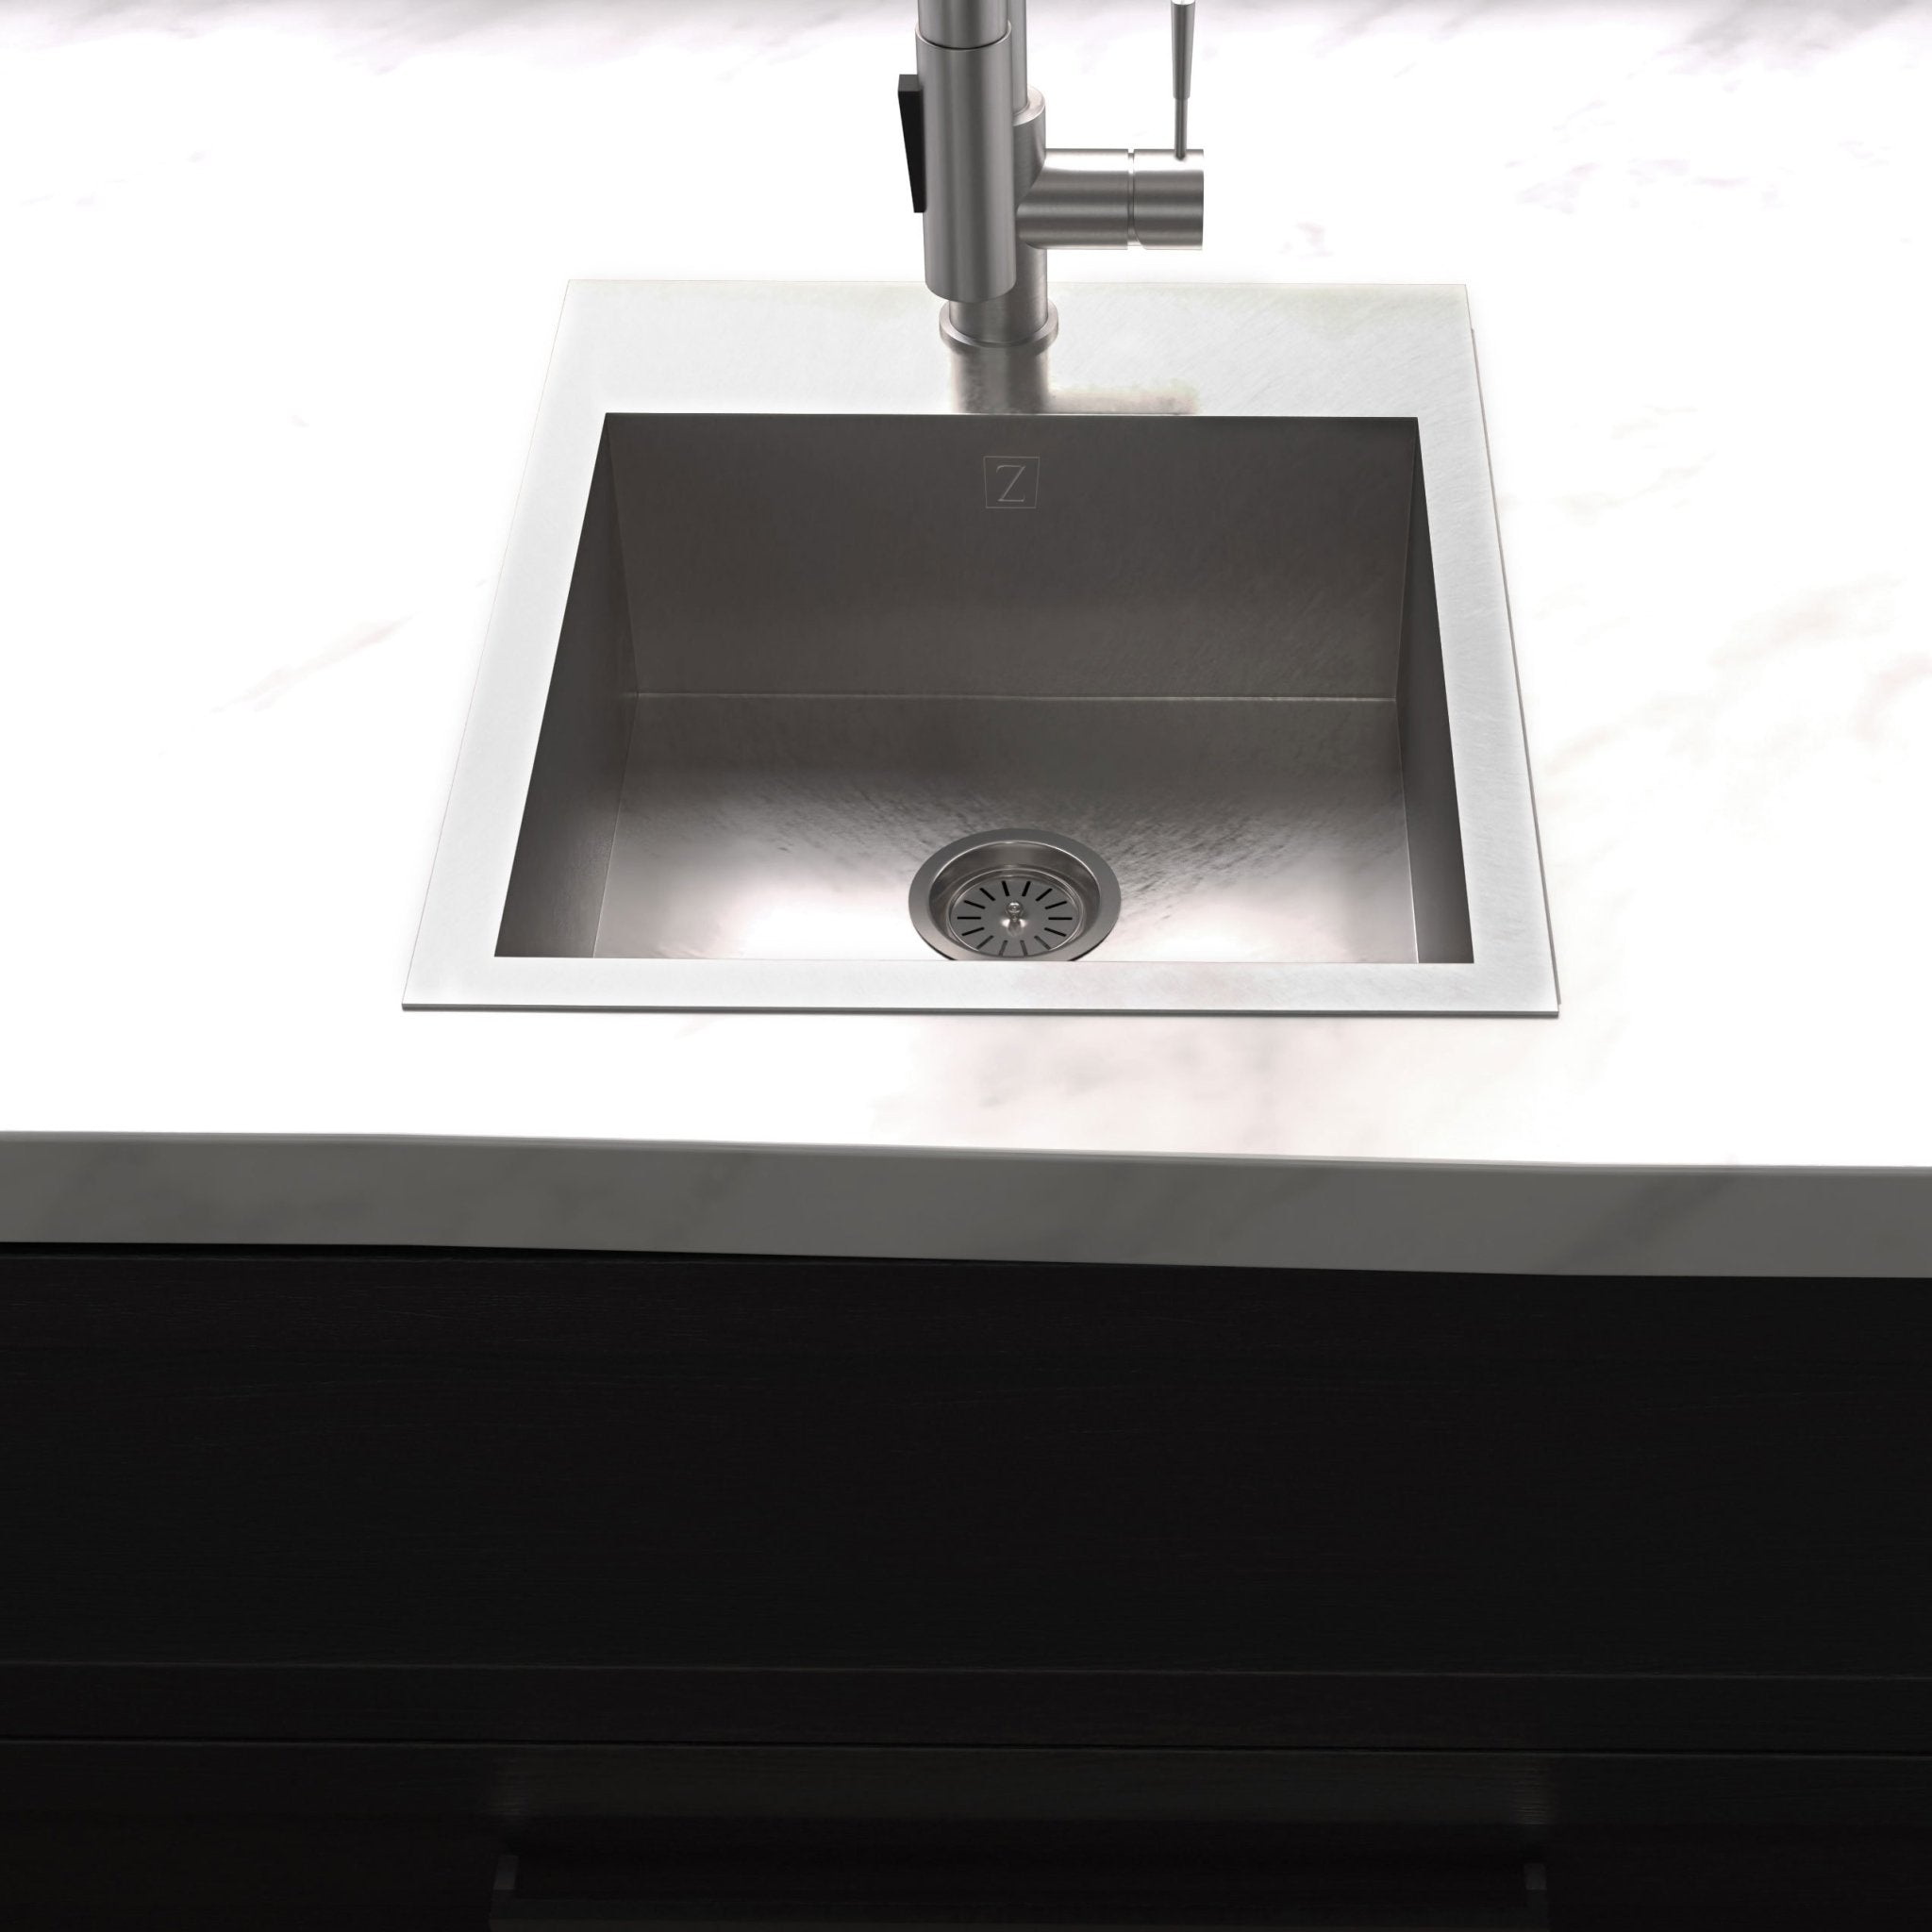 ZLINE 15-inch topmount sink installed in white marble counter kitchen